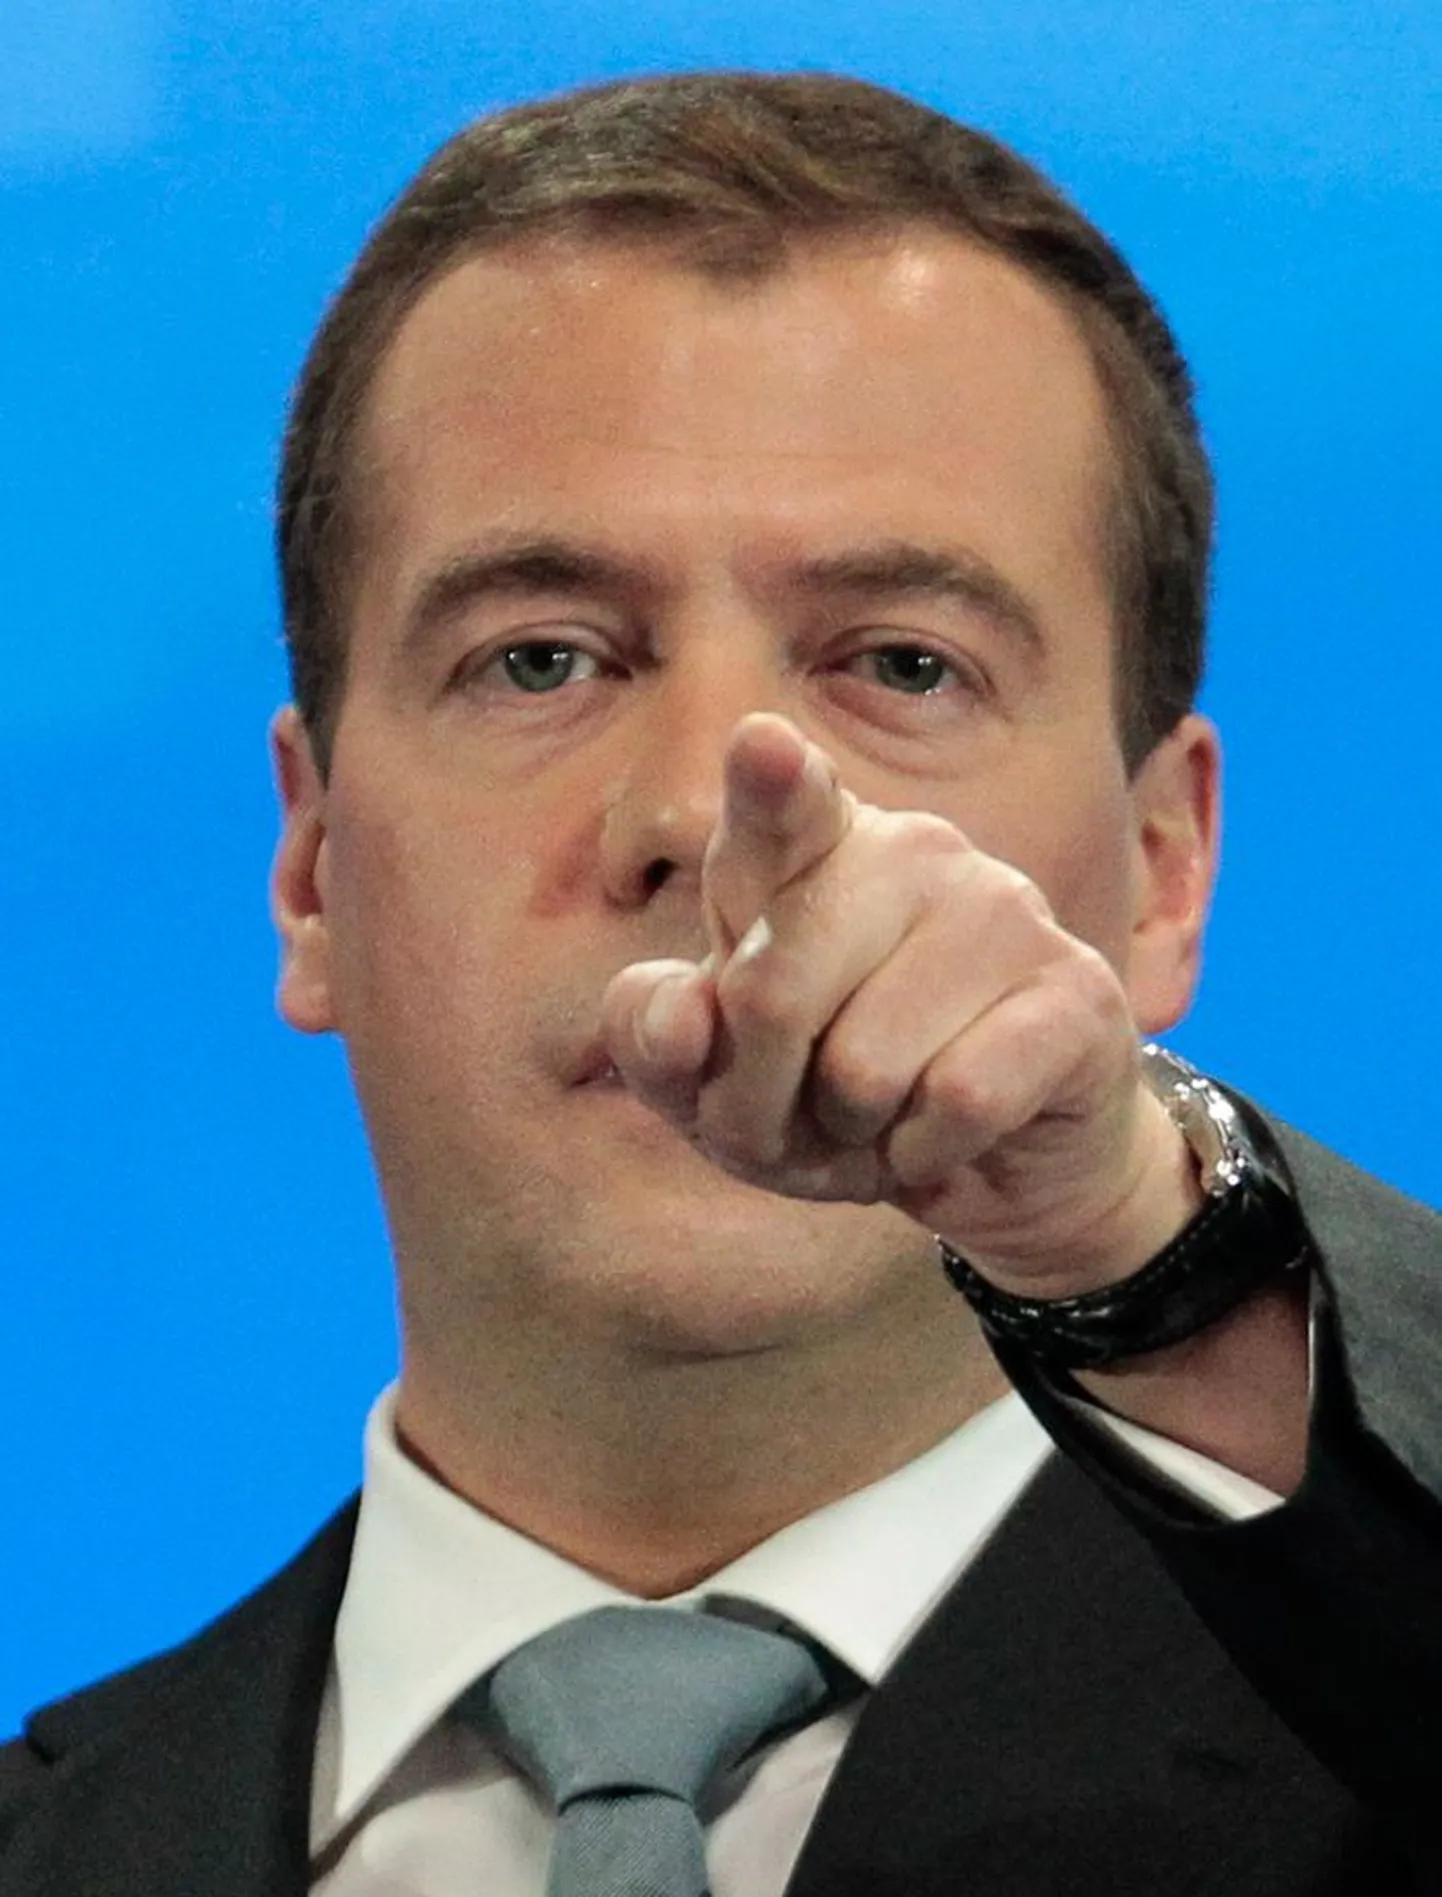 Venemaa presidendi Dmitri Medvedevi kinnitusel on Euroopa raketikilp Venemaata mõeldamatu.